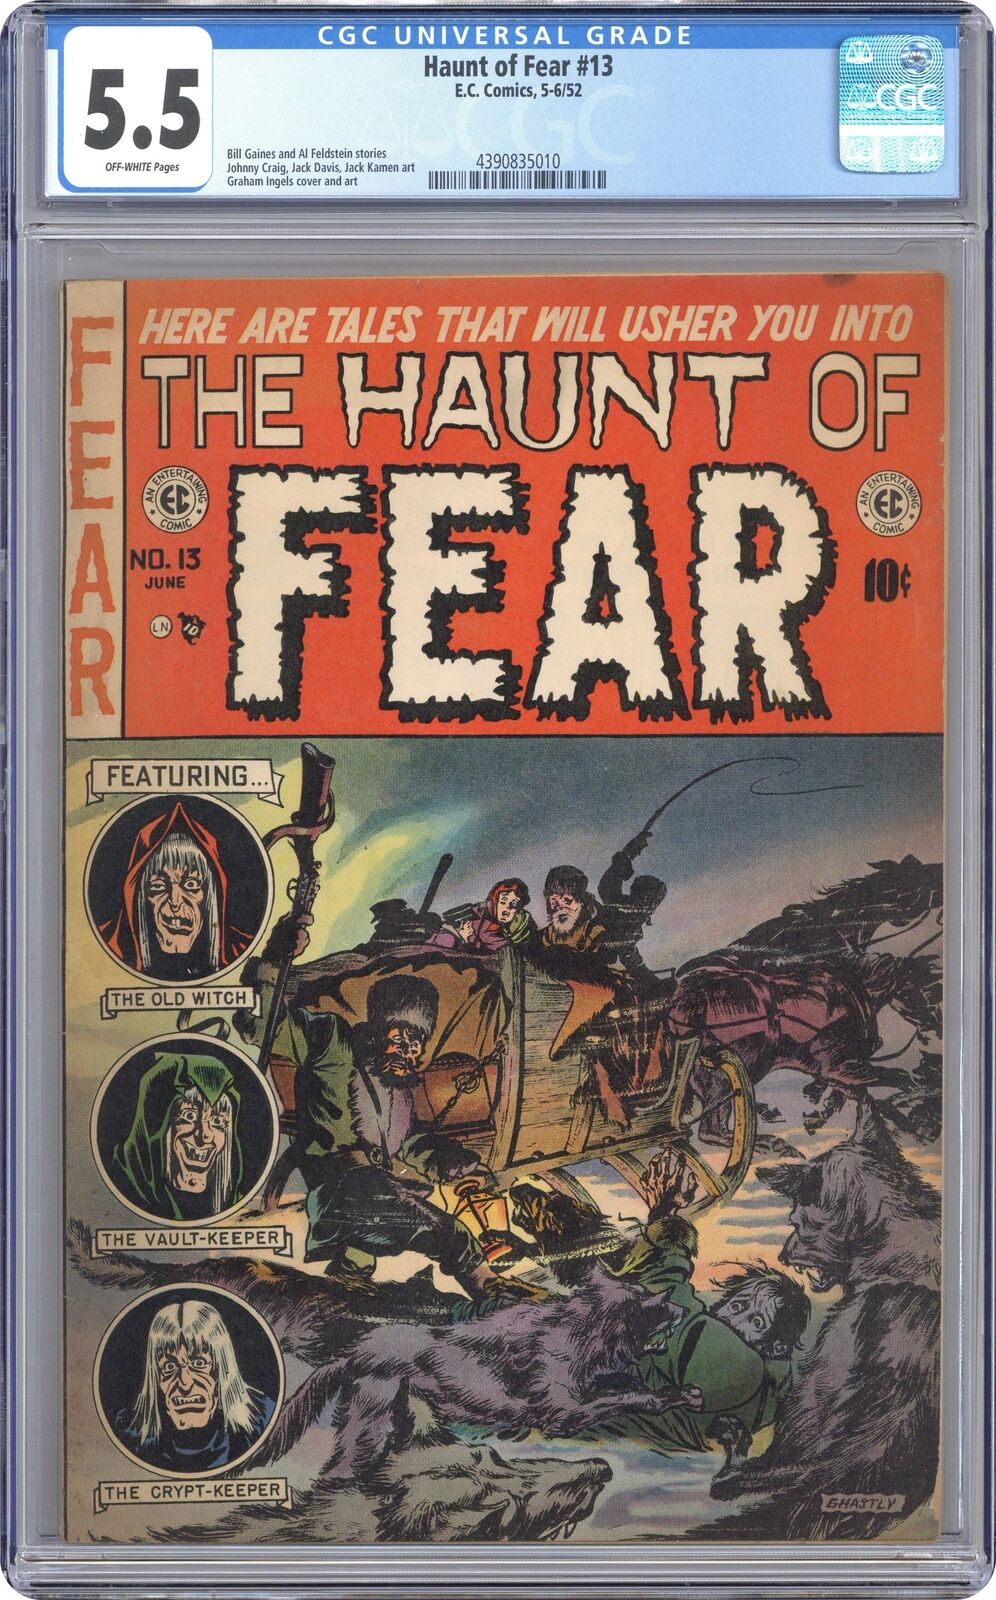 Haunt of Fear #13 CGC 5.5 1952 4390835010